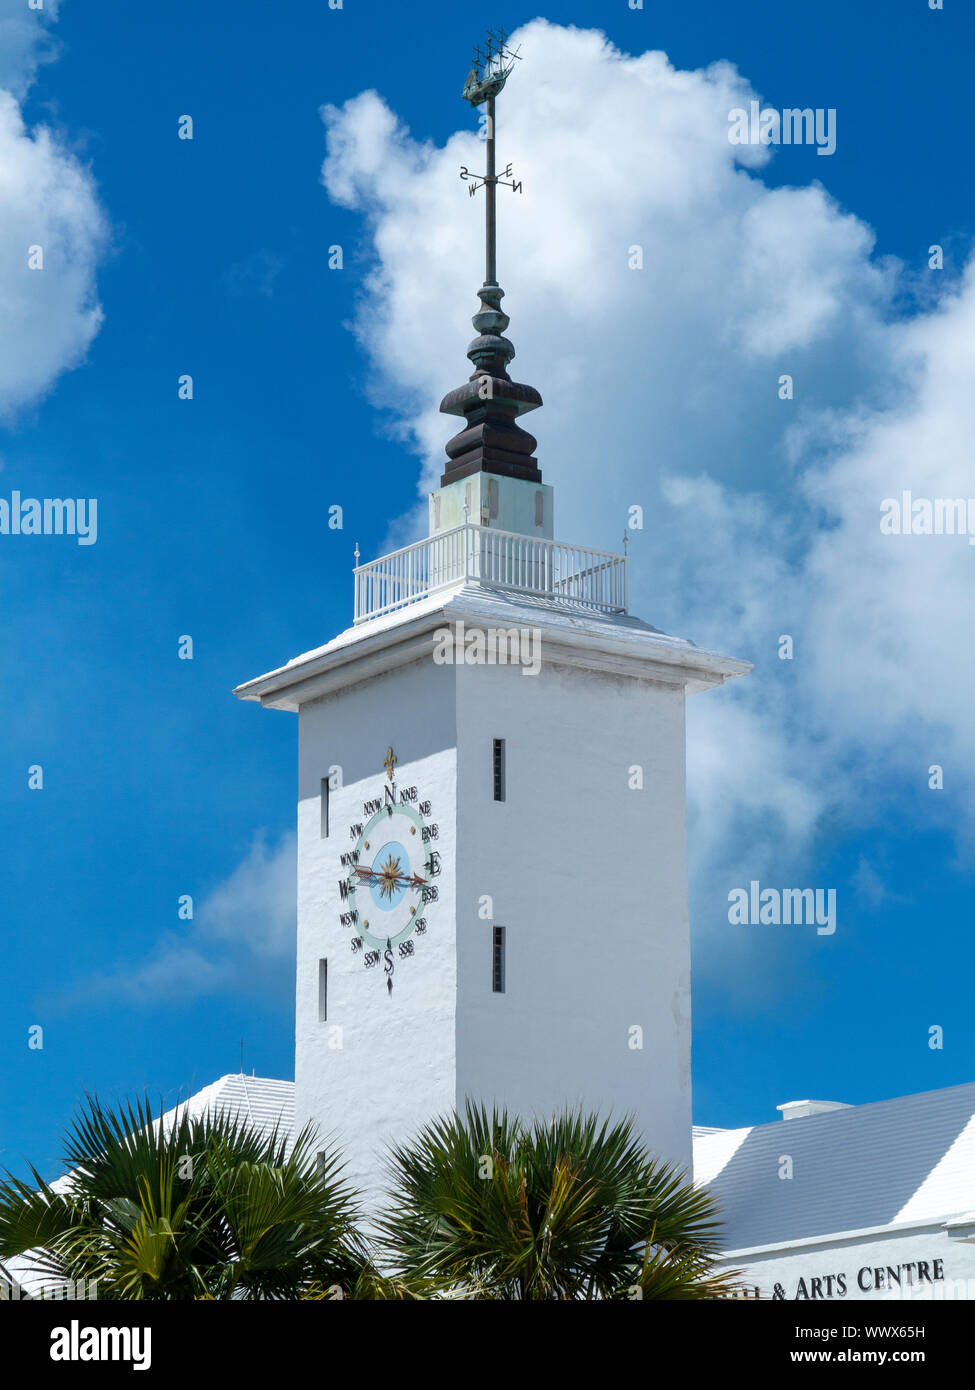 Der Uhrenturm von Hamilton City Hall and Arts Centre, Hamilton, Bermuda vor einem blauen Himmel und weißen Wolken Stockfoto